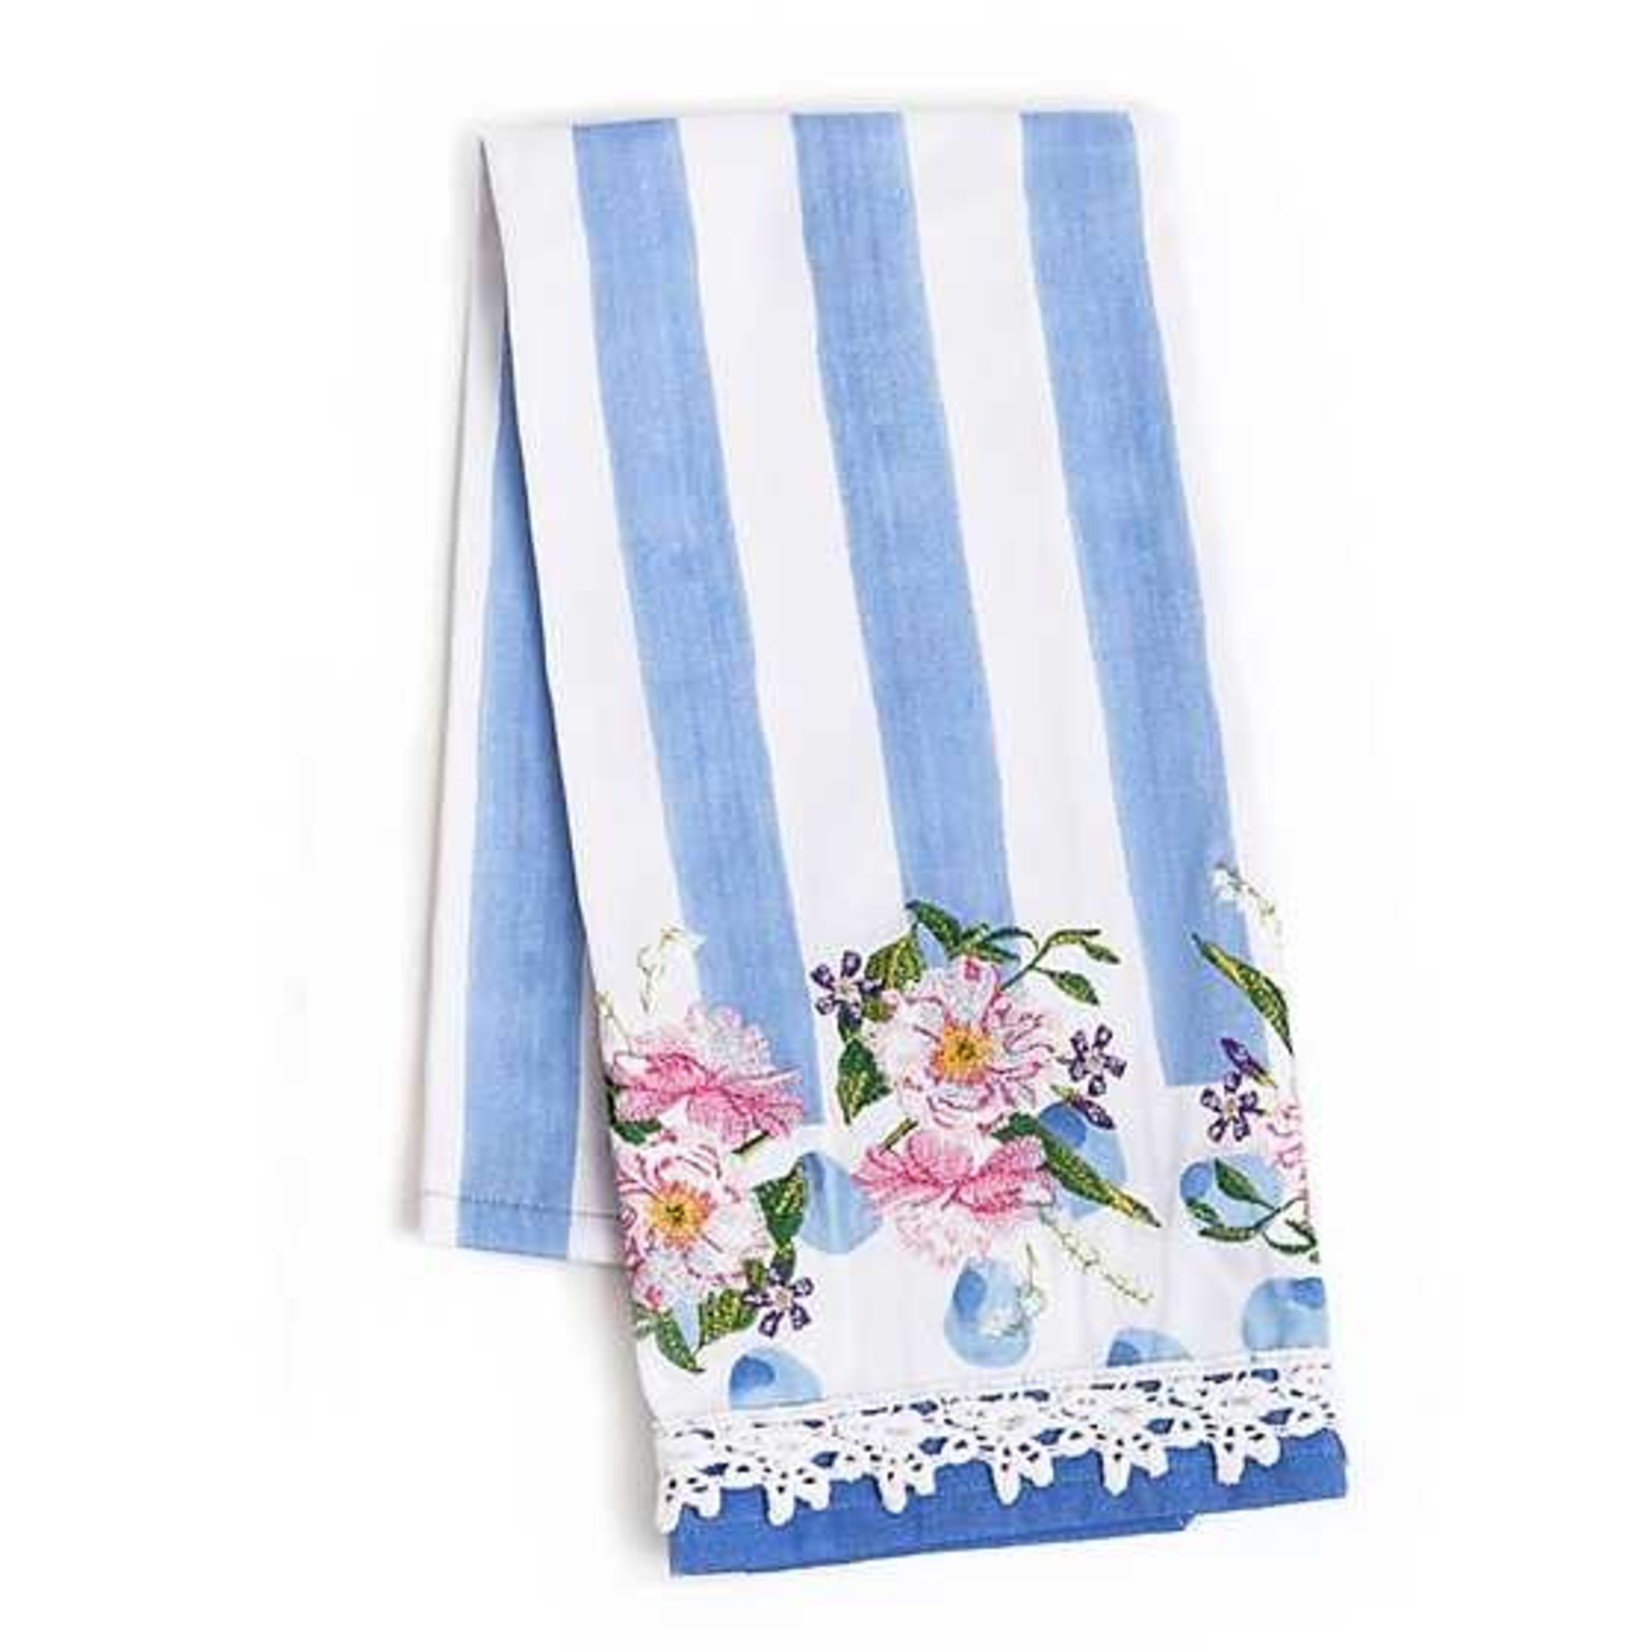 MacKenzie Childs Wildflowers Dish Towel - Blue